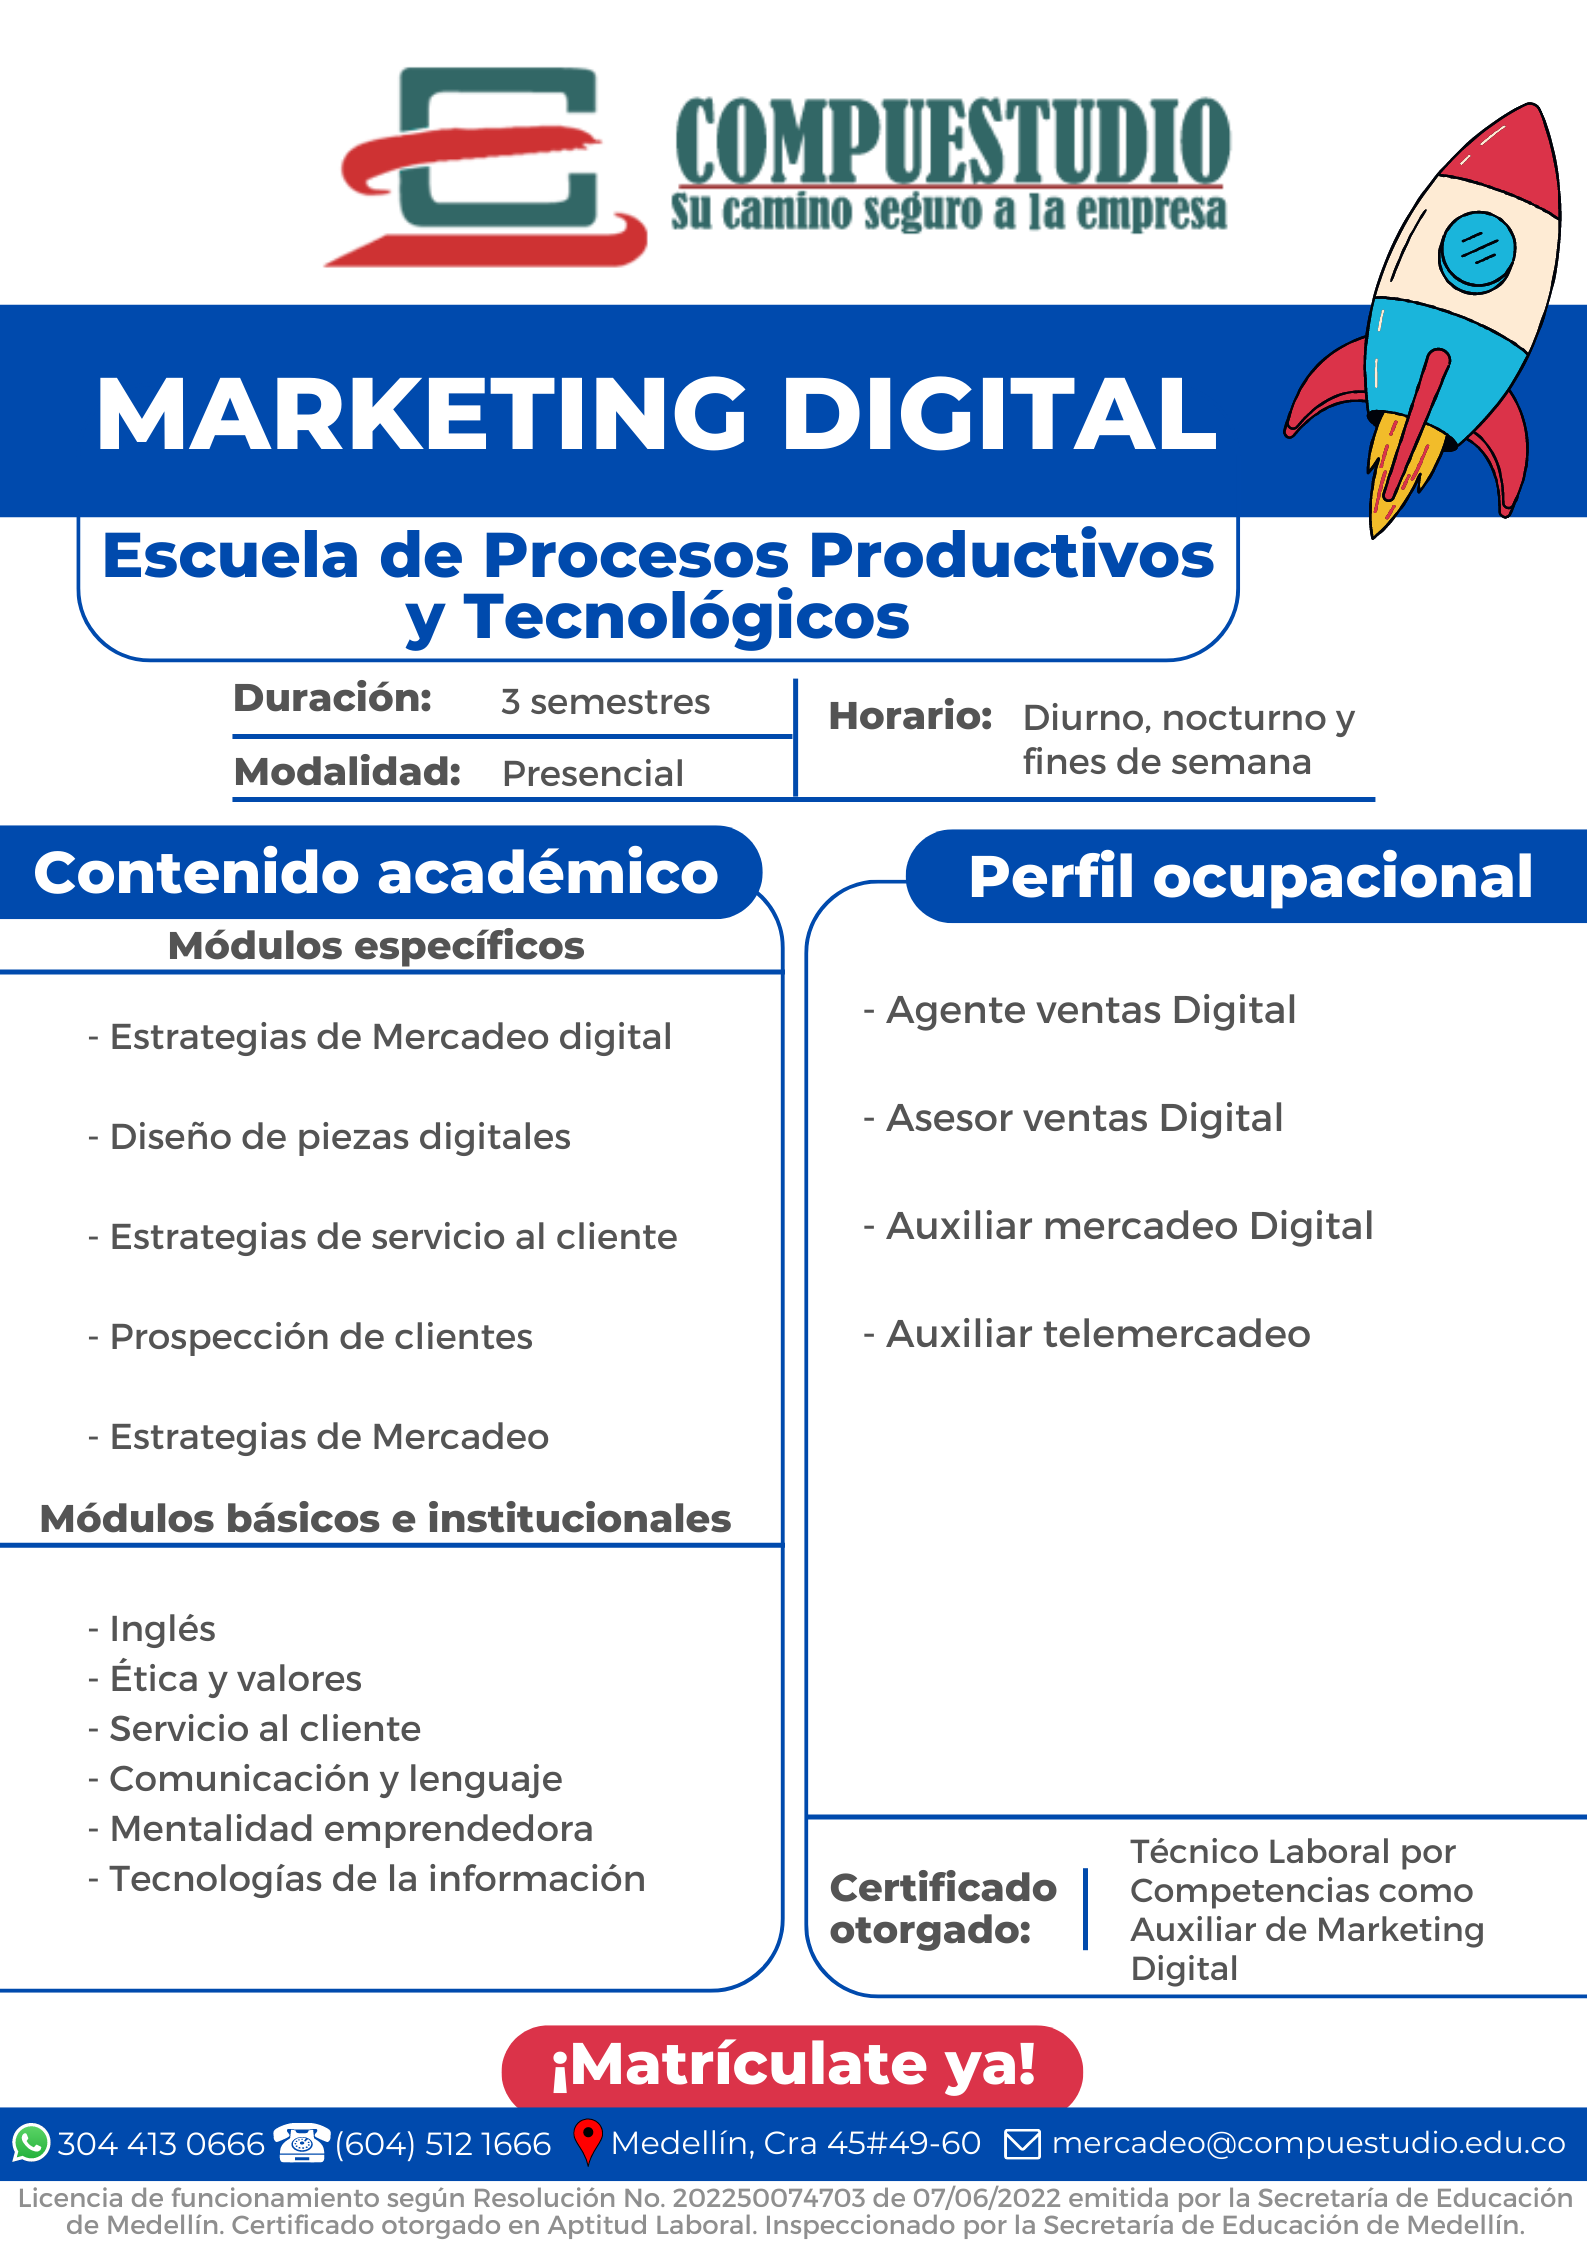 Técnico en Marketing Digital Medellín Compuestudio